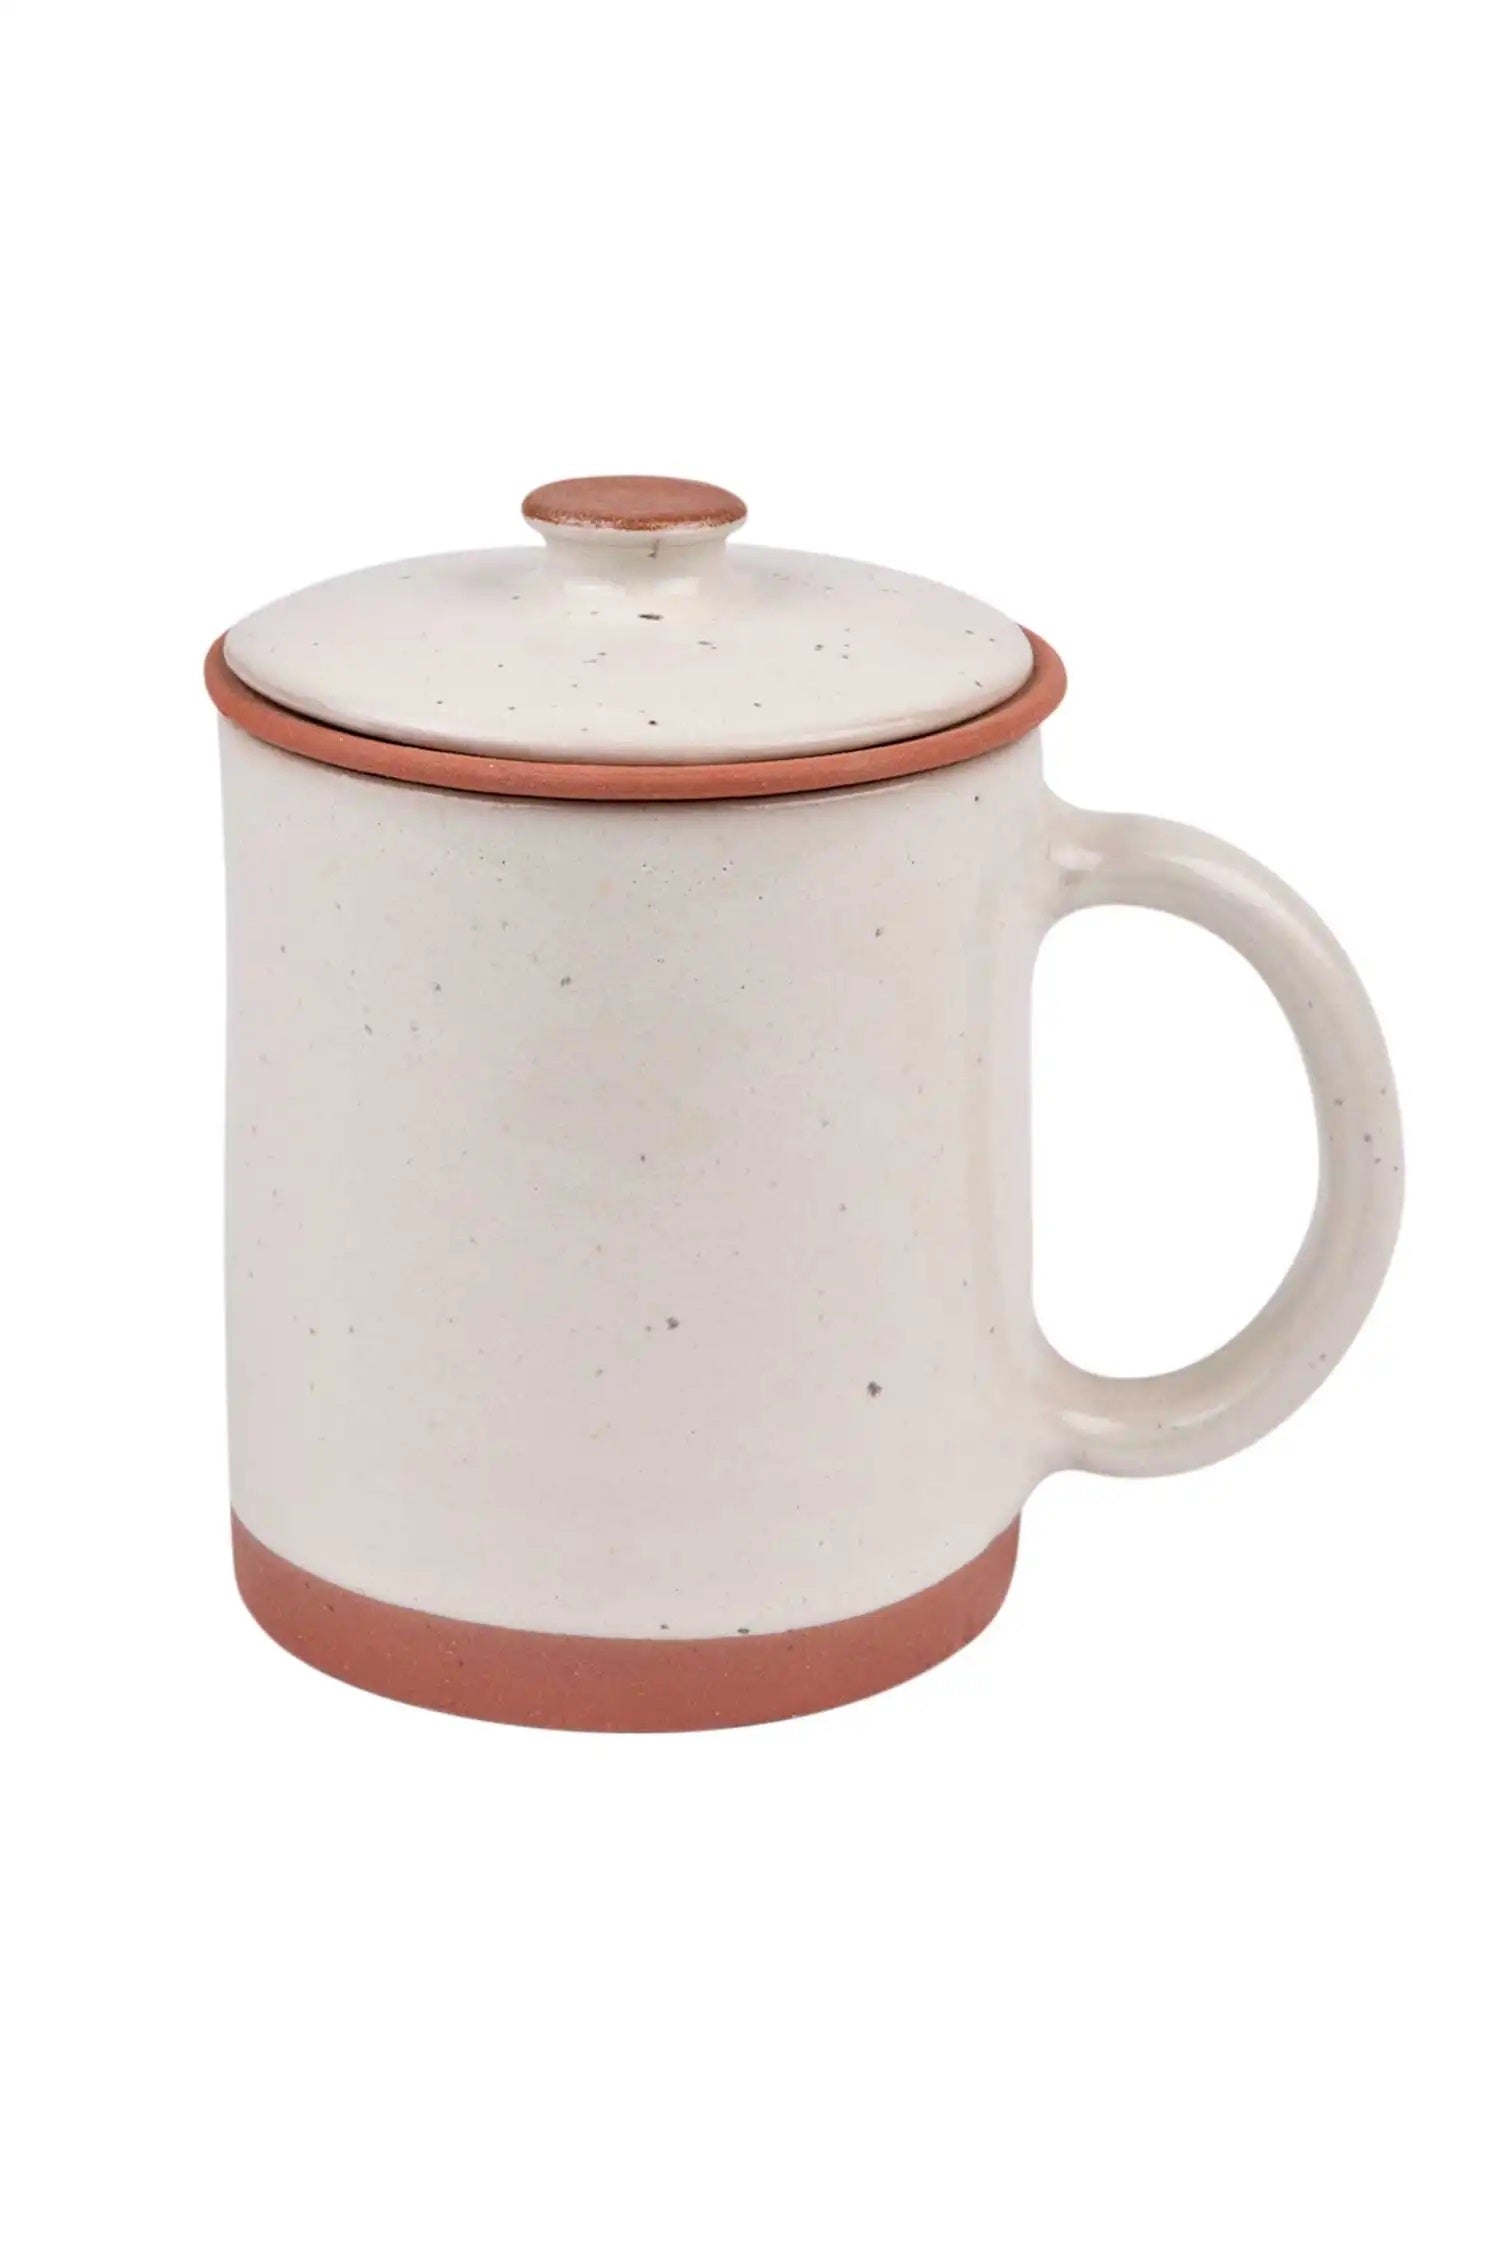 Nepalese Tea Mug